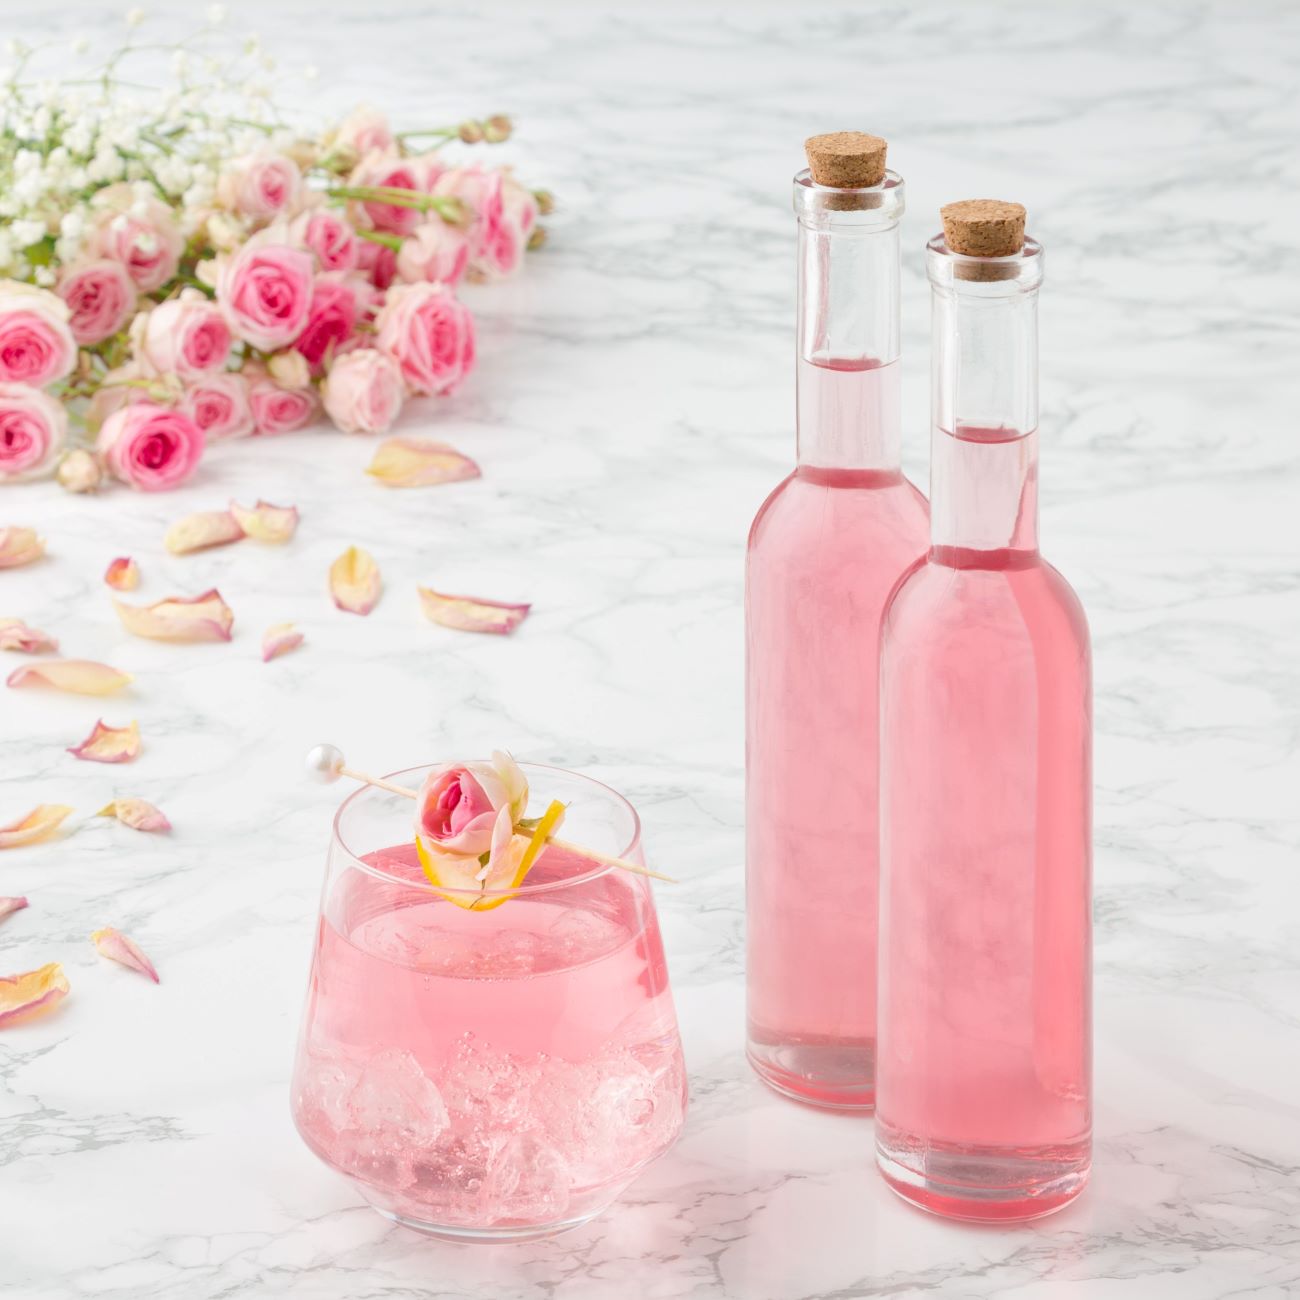 Růžový sirup se podává ve dvou malých lahvičkách a sklenici s kostkami ledu.